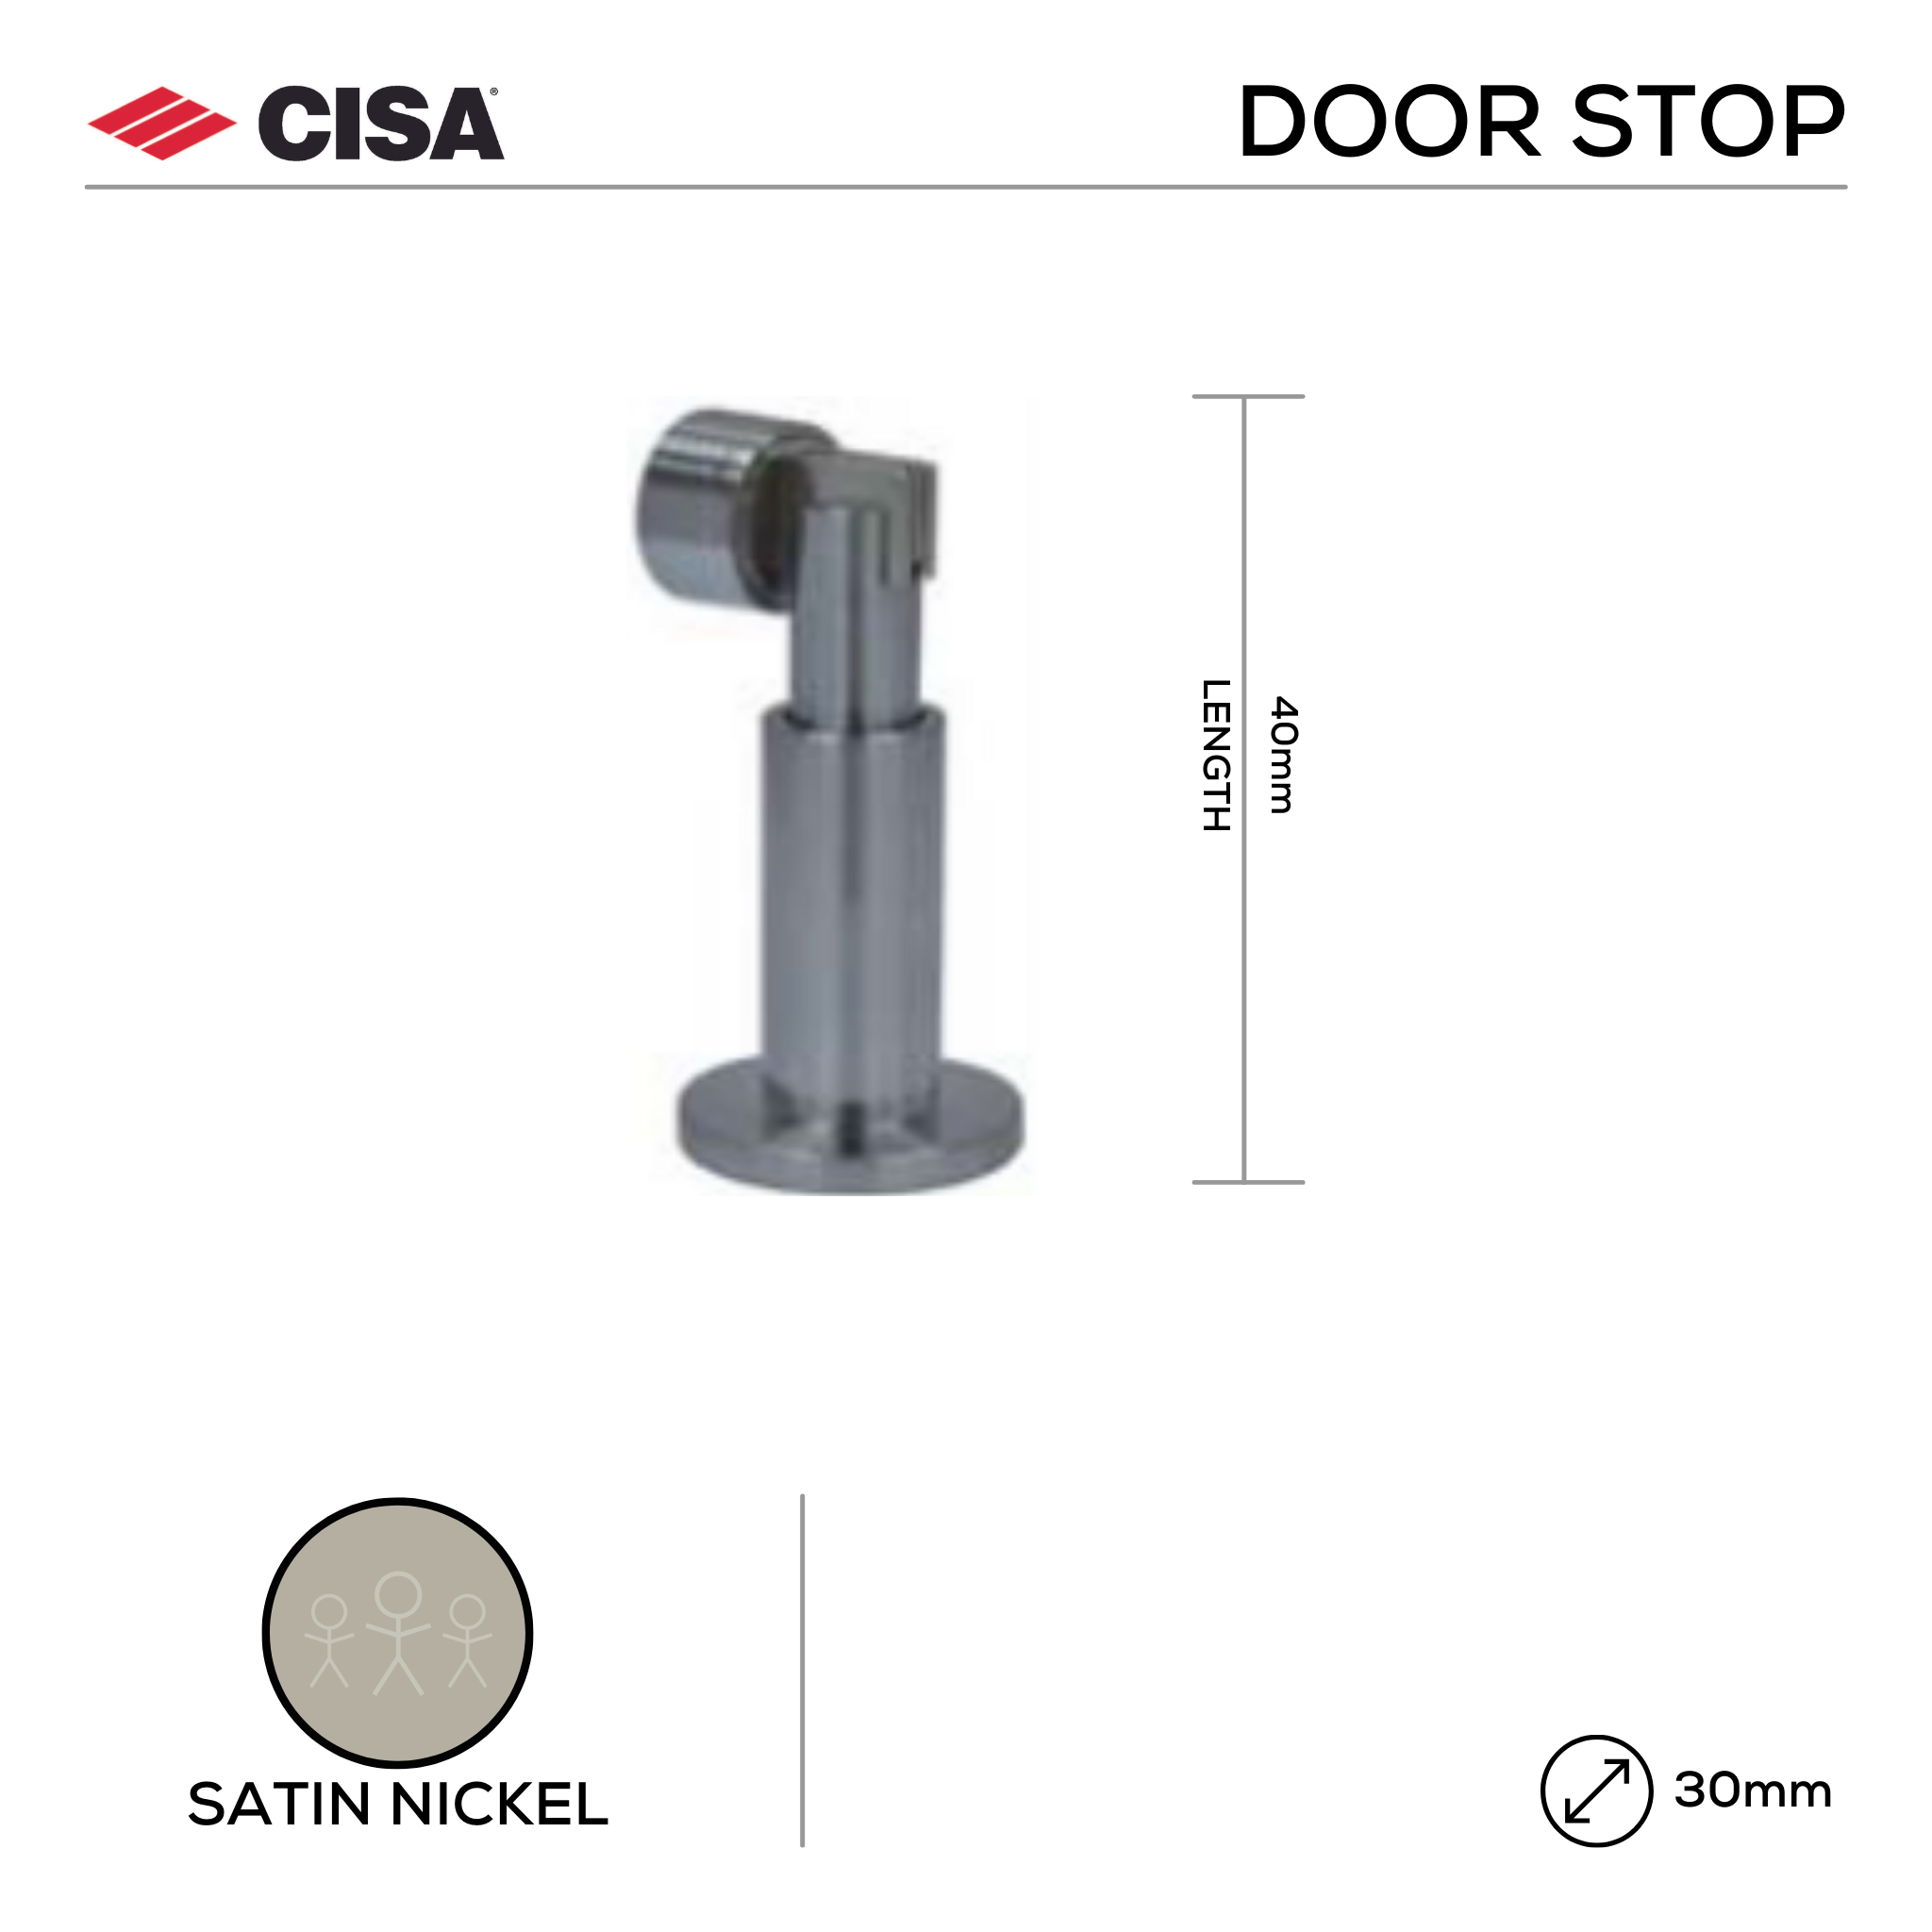 FMDS01.SN, Door Stop, Floor Mounted, Magnetic, Satin Nickel, CISA